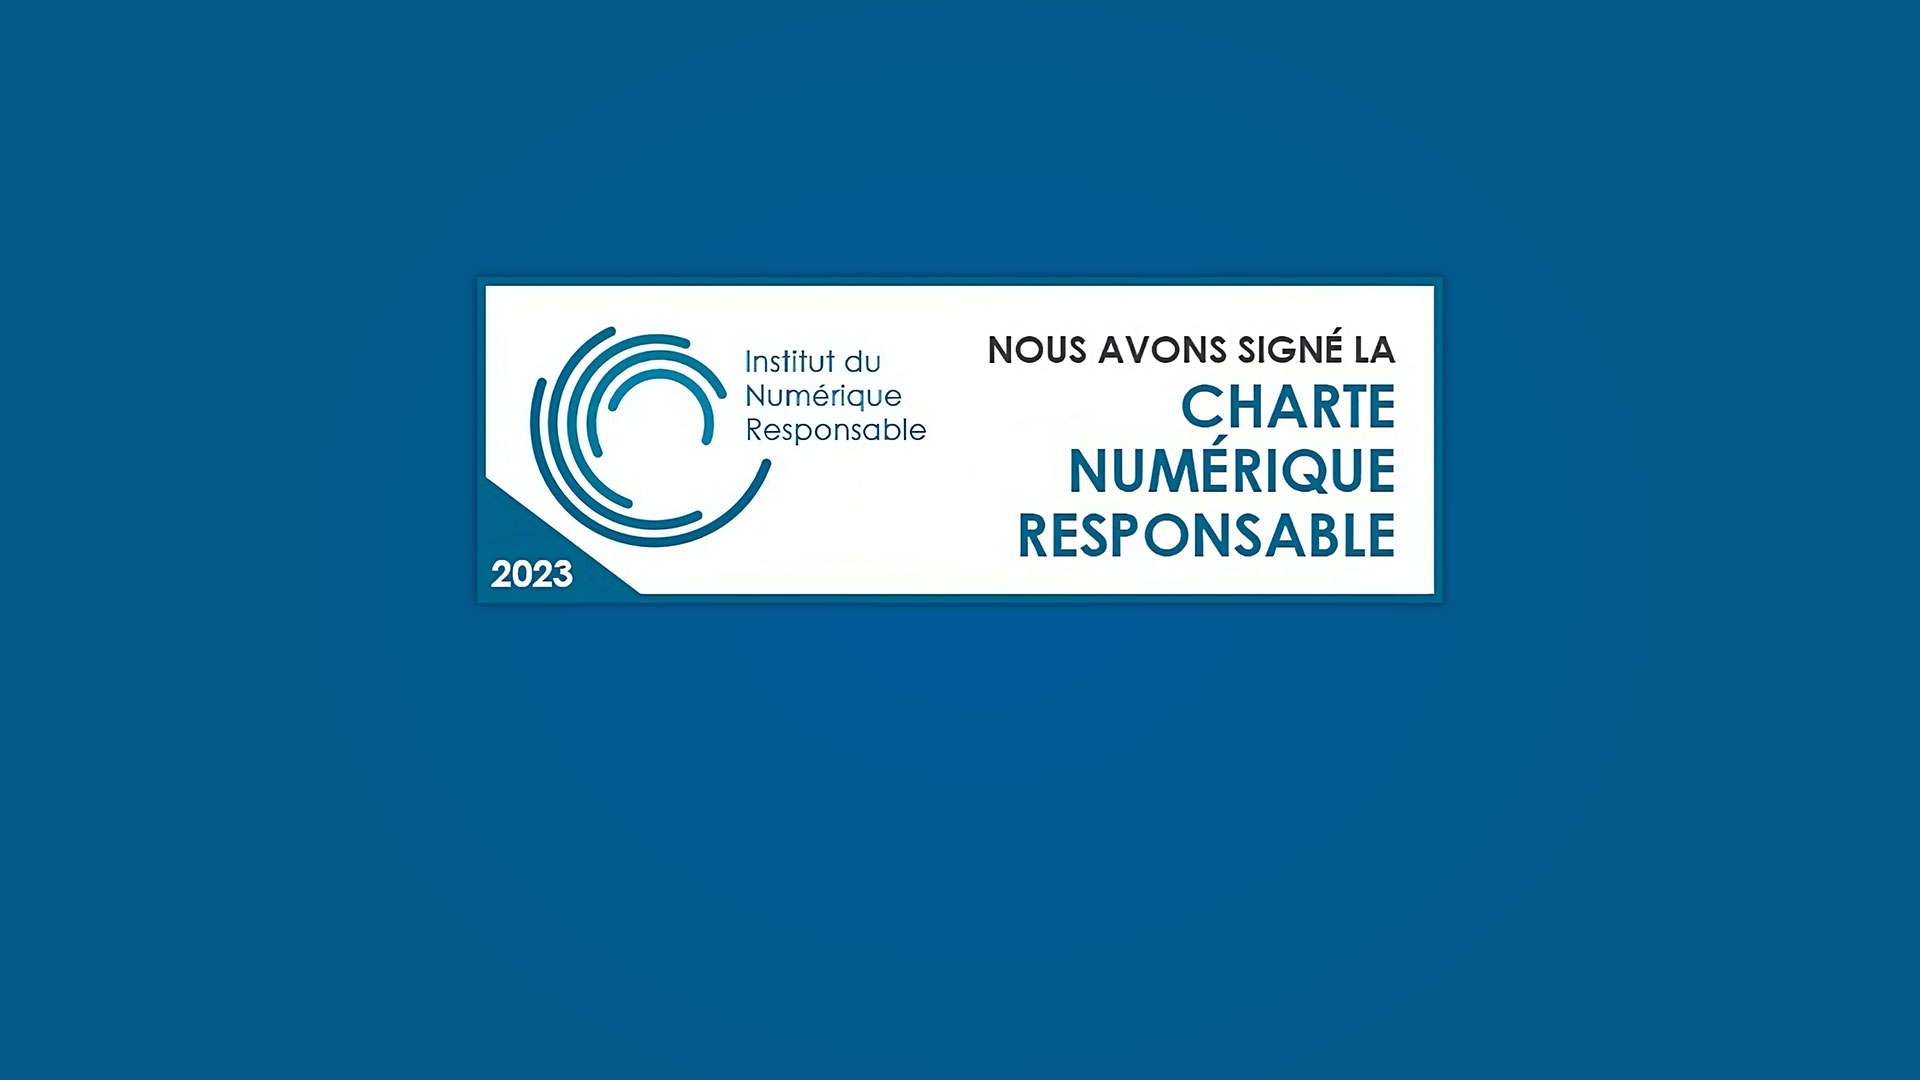 Charte Numérique Responsable